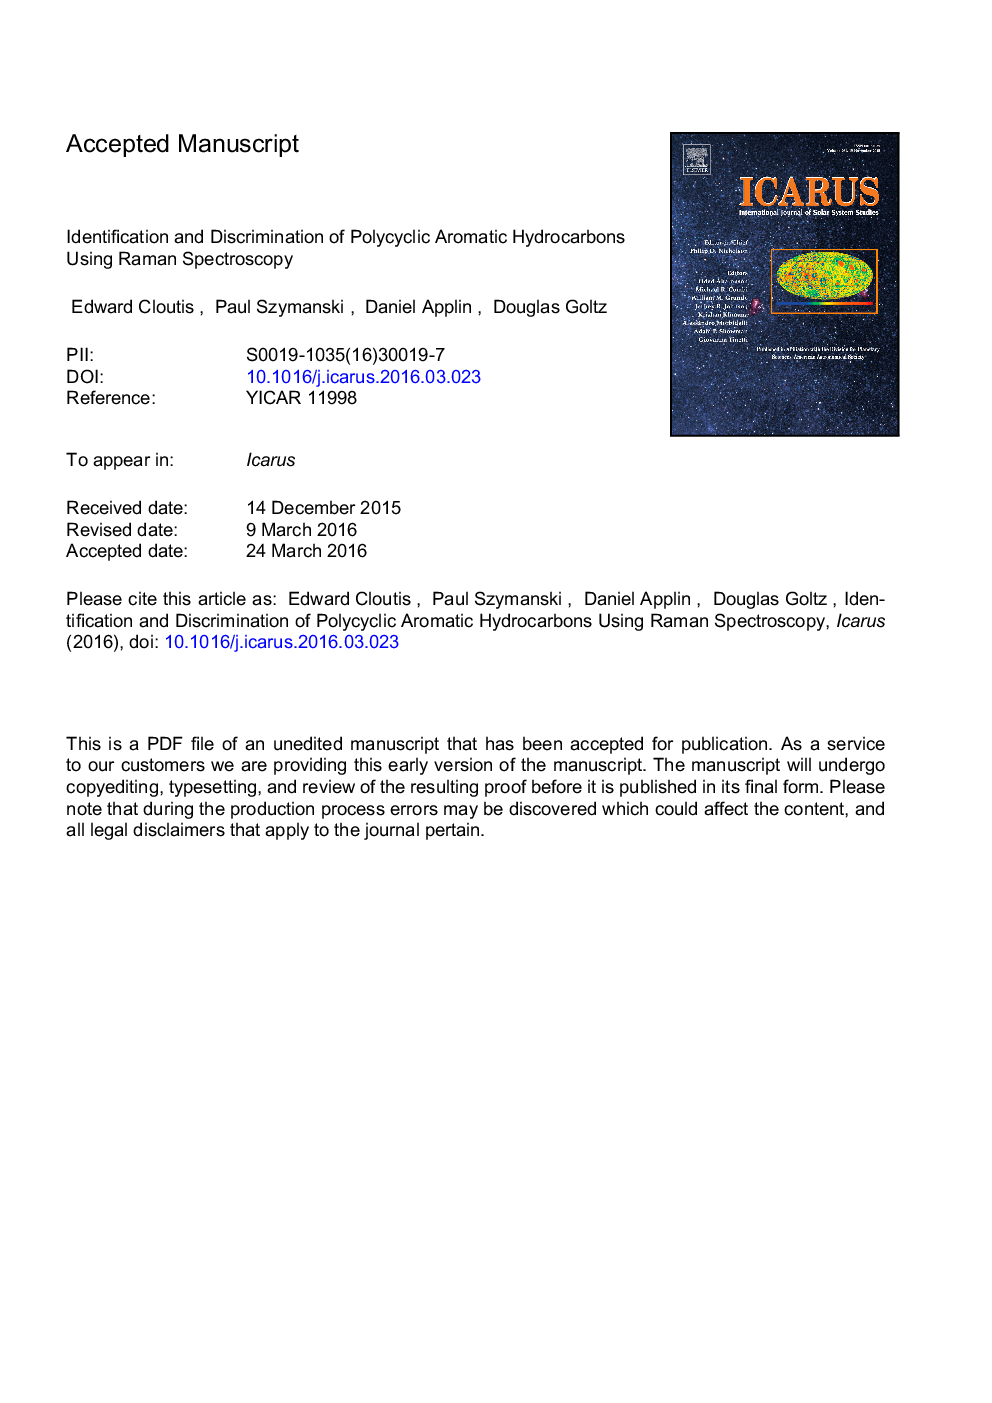 شناسایی و تبعیض از هیدروکربن های آروماتیک چند حلقه ای با استفاده از طیف سنجی رامان 